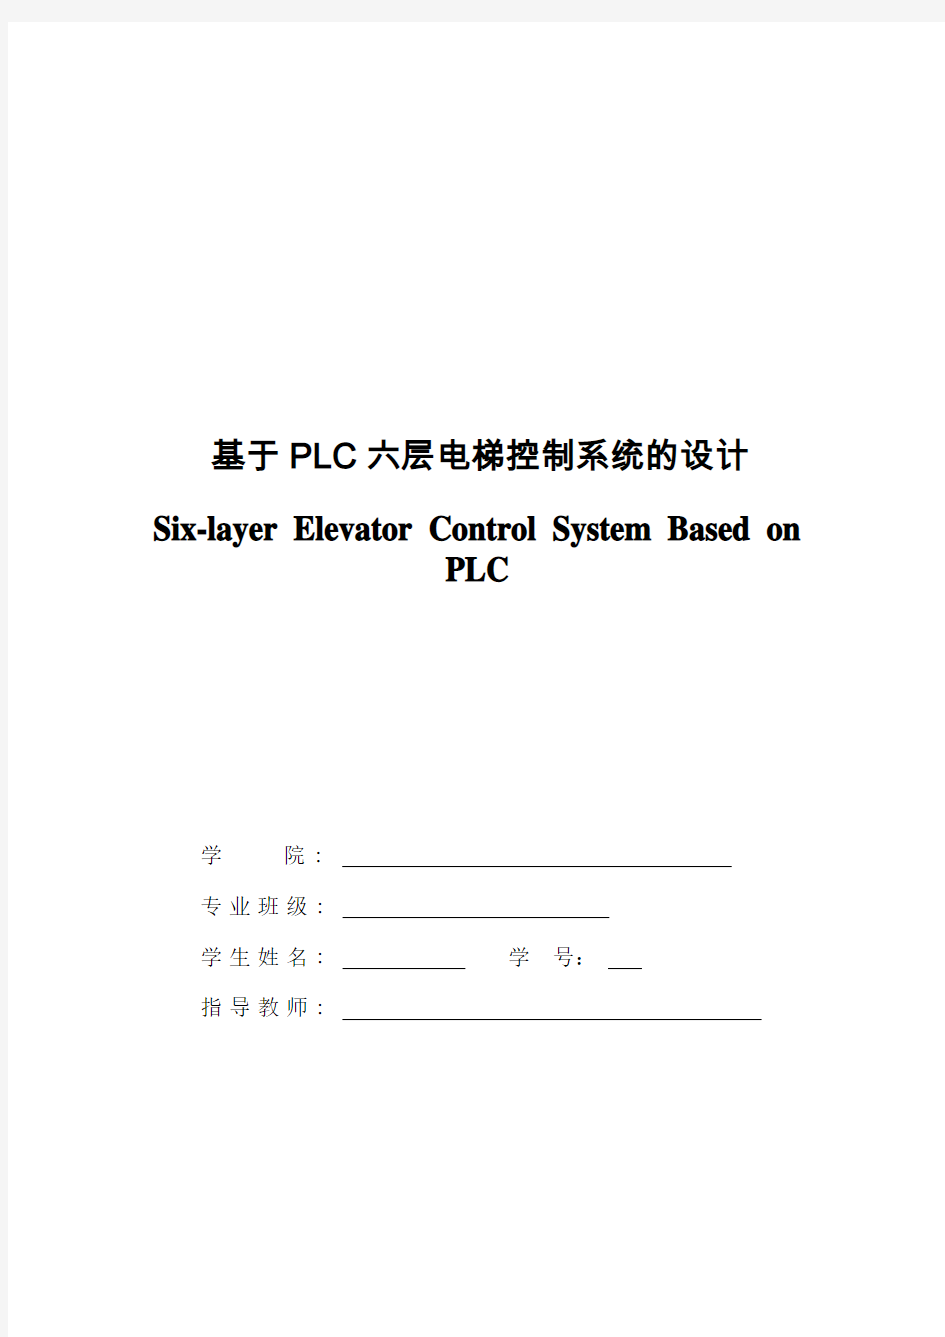 基于PLC六层电梯控制系统的设计